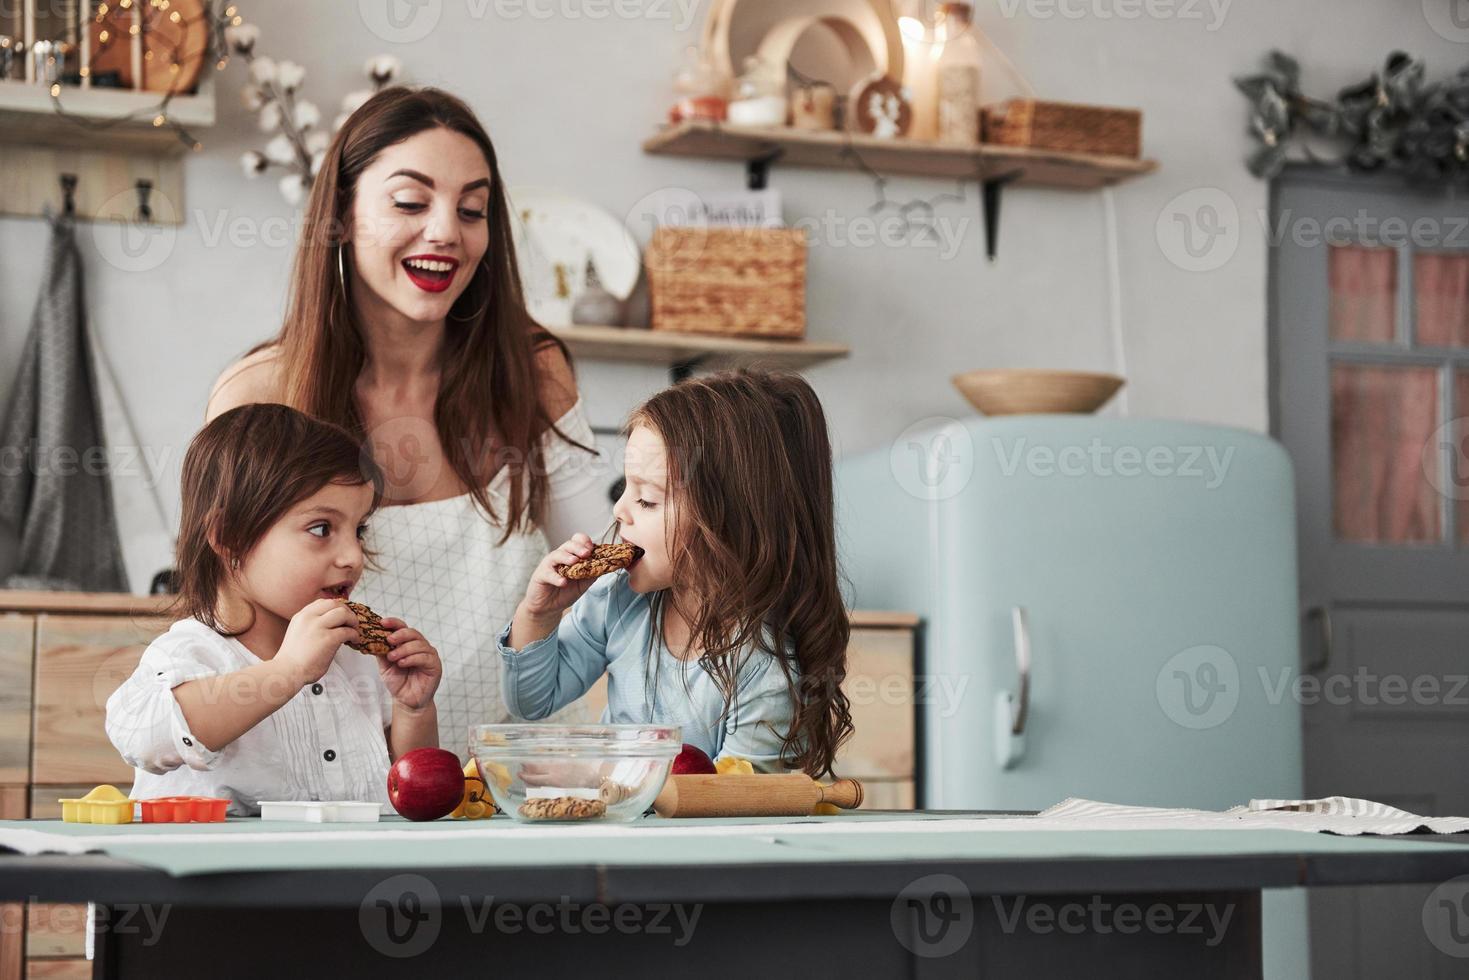 processo de comer. jovem mulher bonita dá os biscoitos enquanto eles estão sentados perto da mesa com brinquedos foto